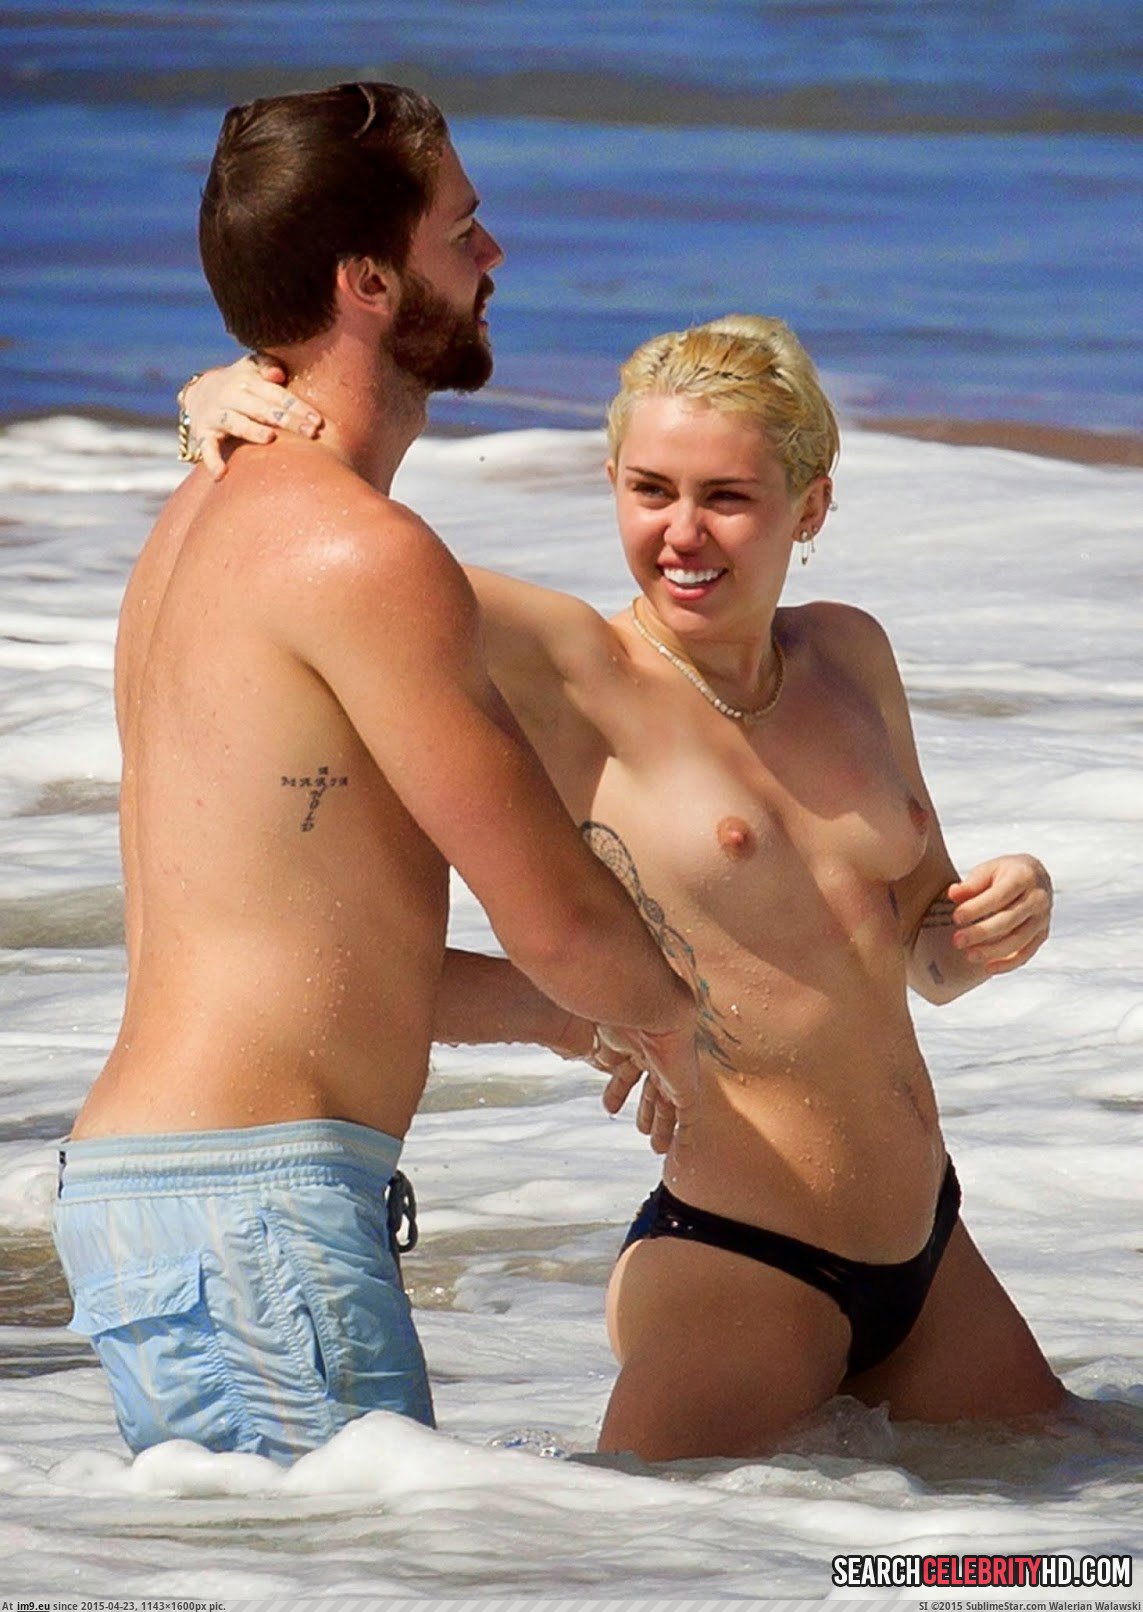 Miley Cyrus Topless Bikini Candid Photos In Hawaii (4) (in Miley Cyrus Topless Bikini Candid Photos In Hawaii)